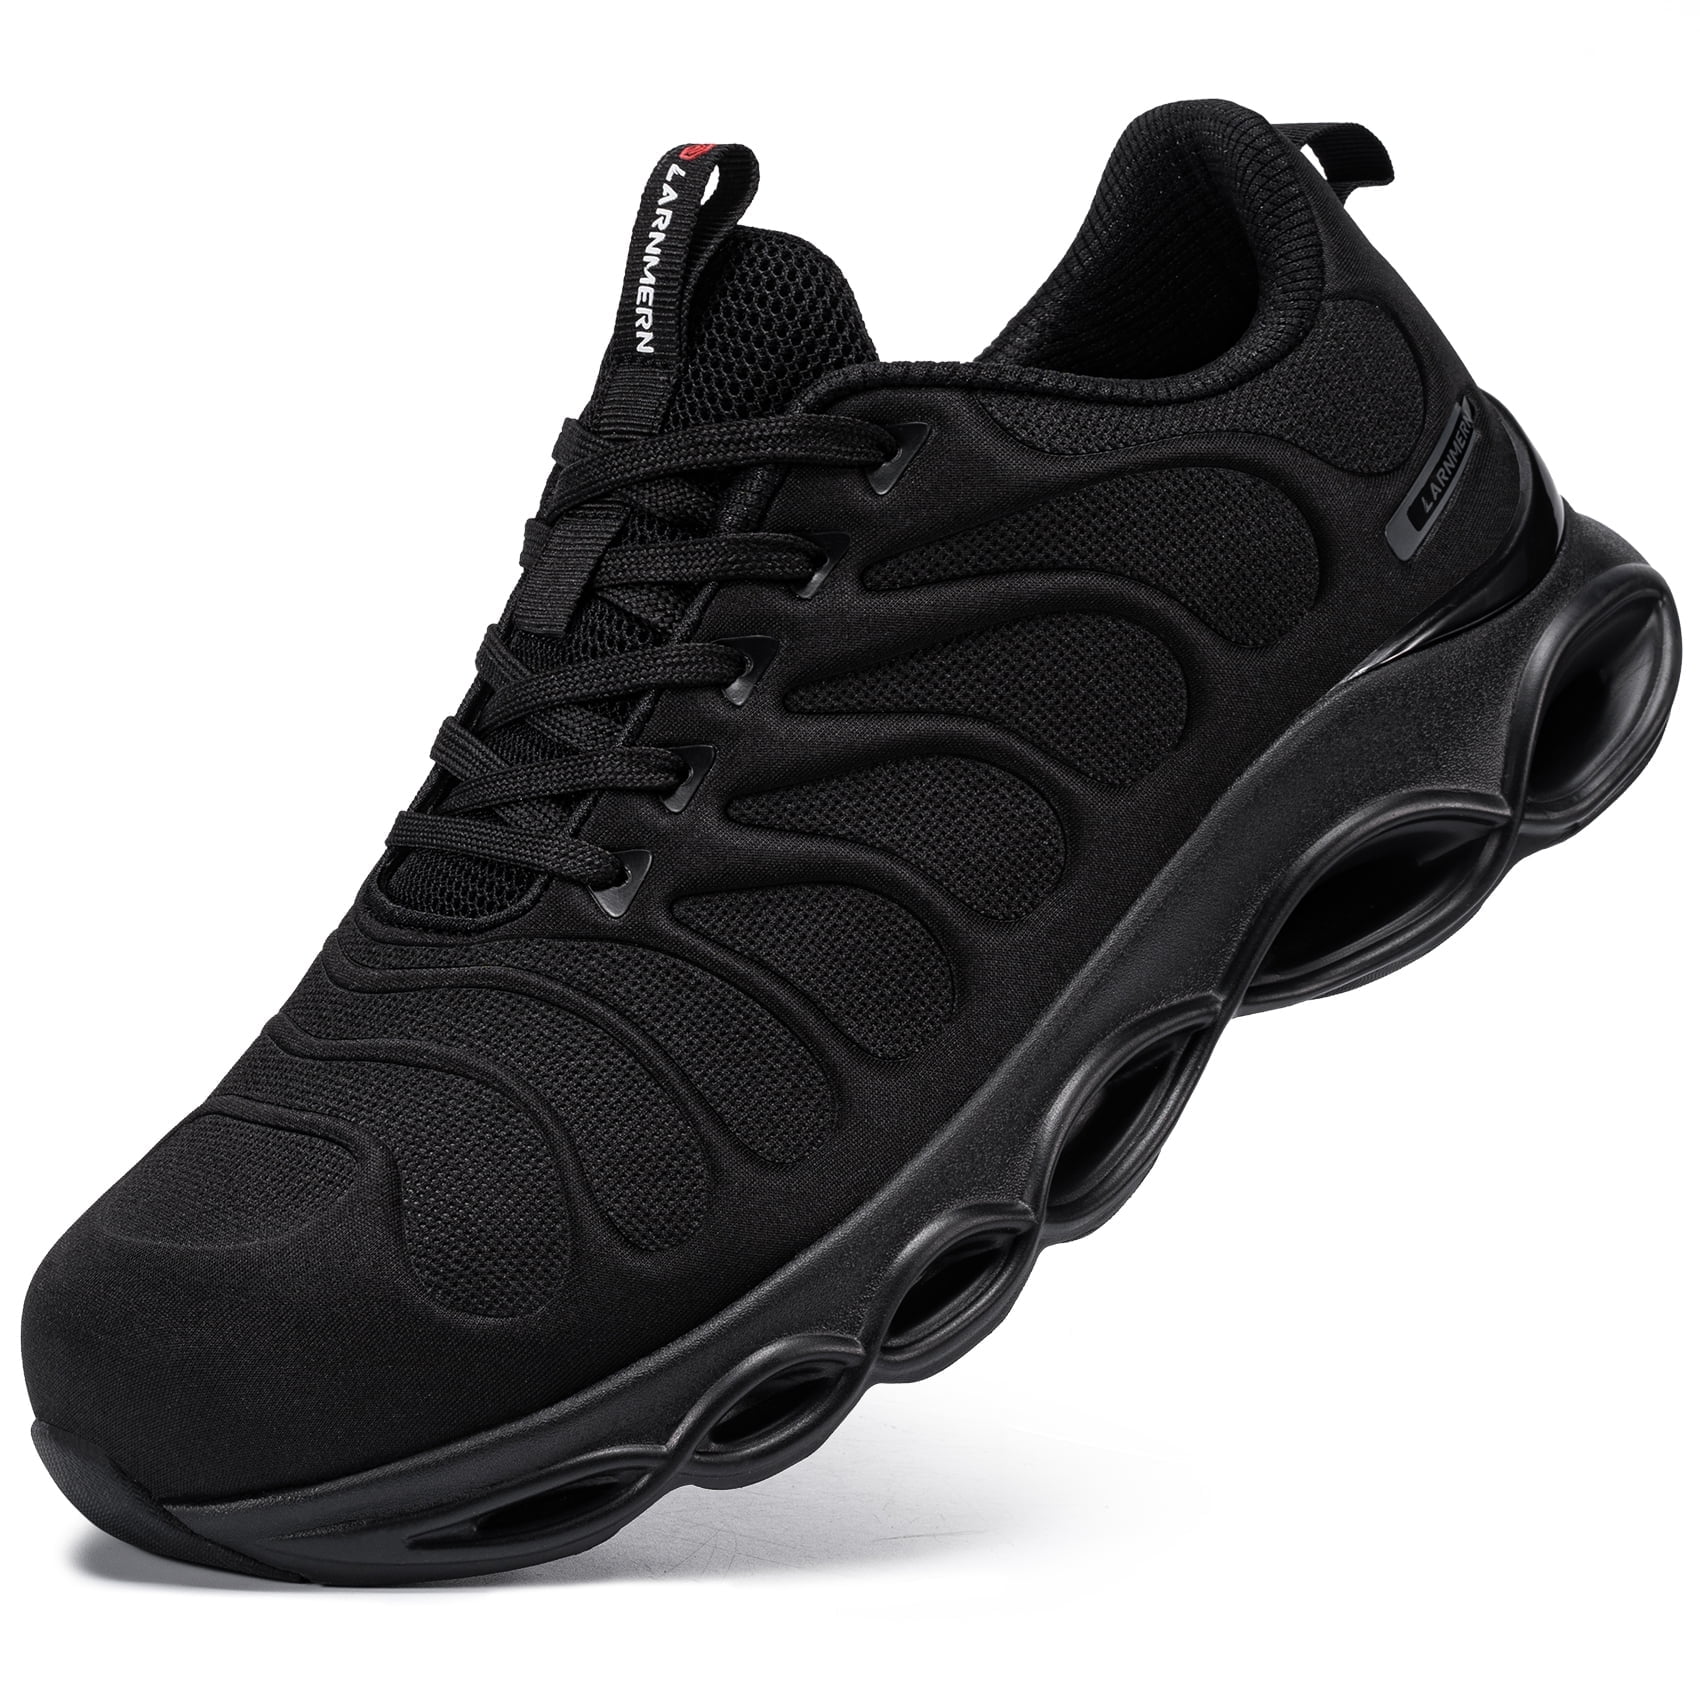 Skechers Work Men's Flex Advantage Slip Resistant Soft Toe Shoes - Wide  Available